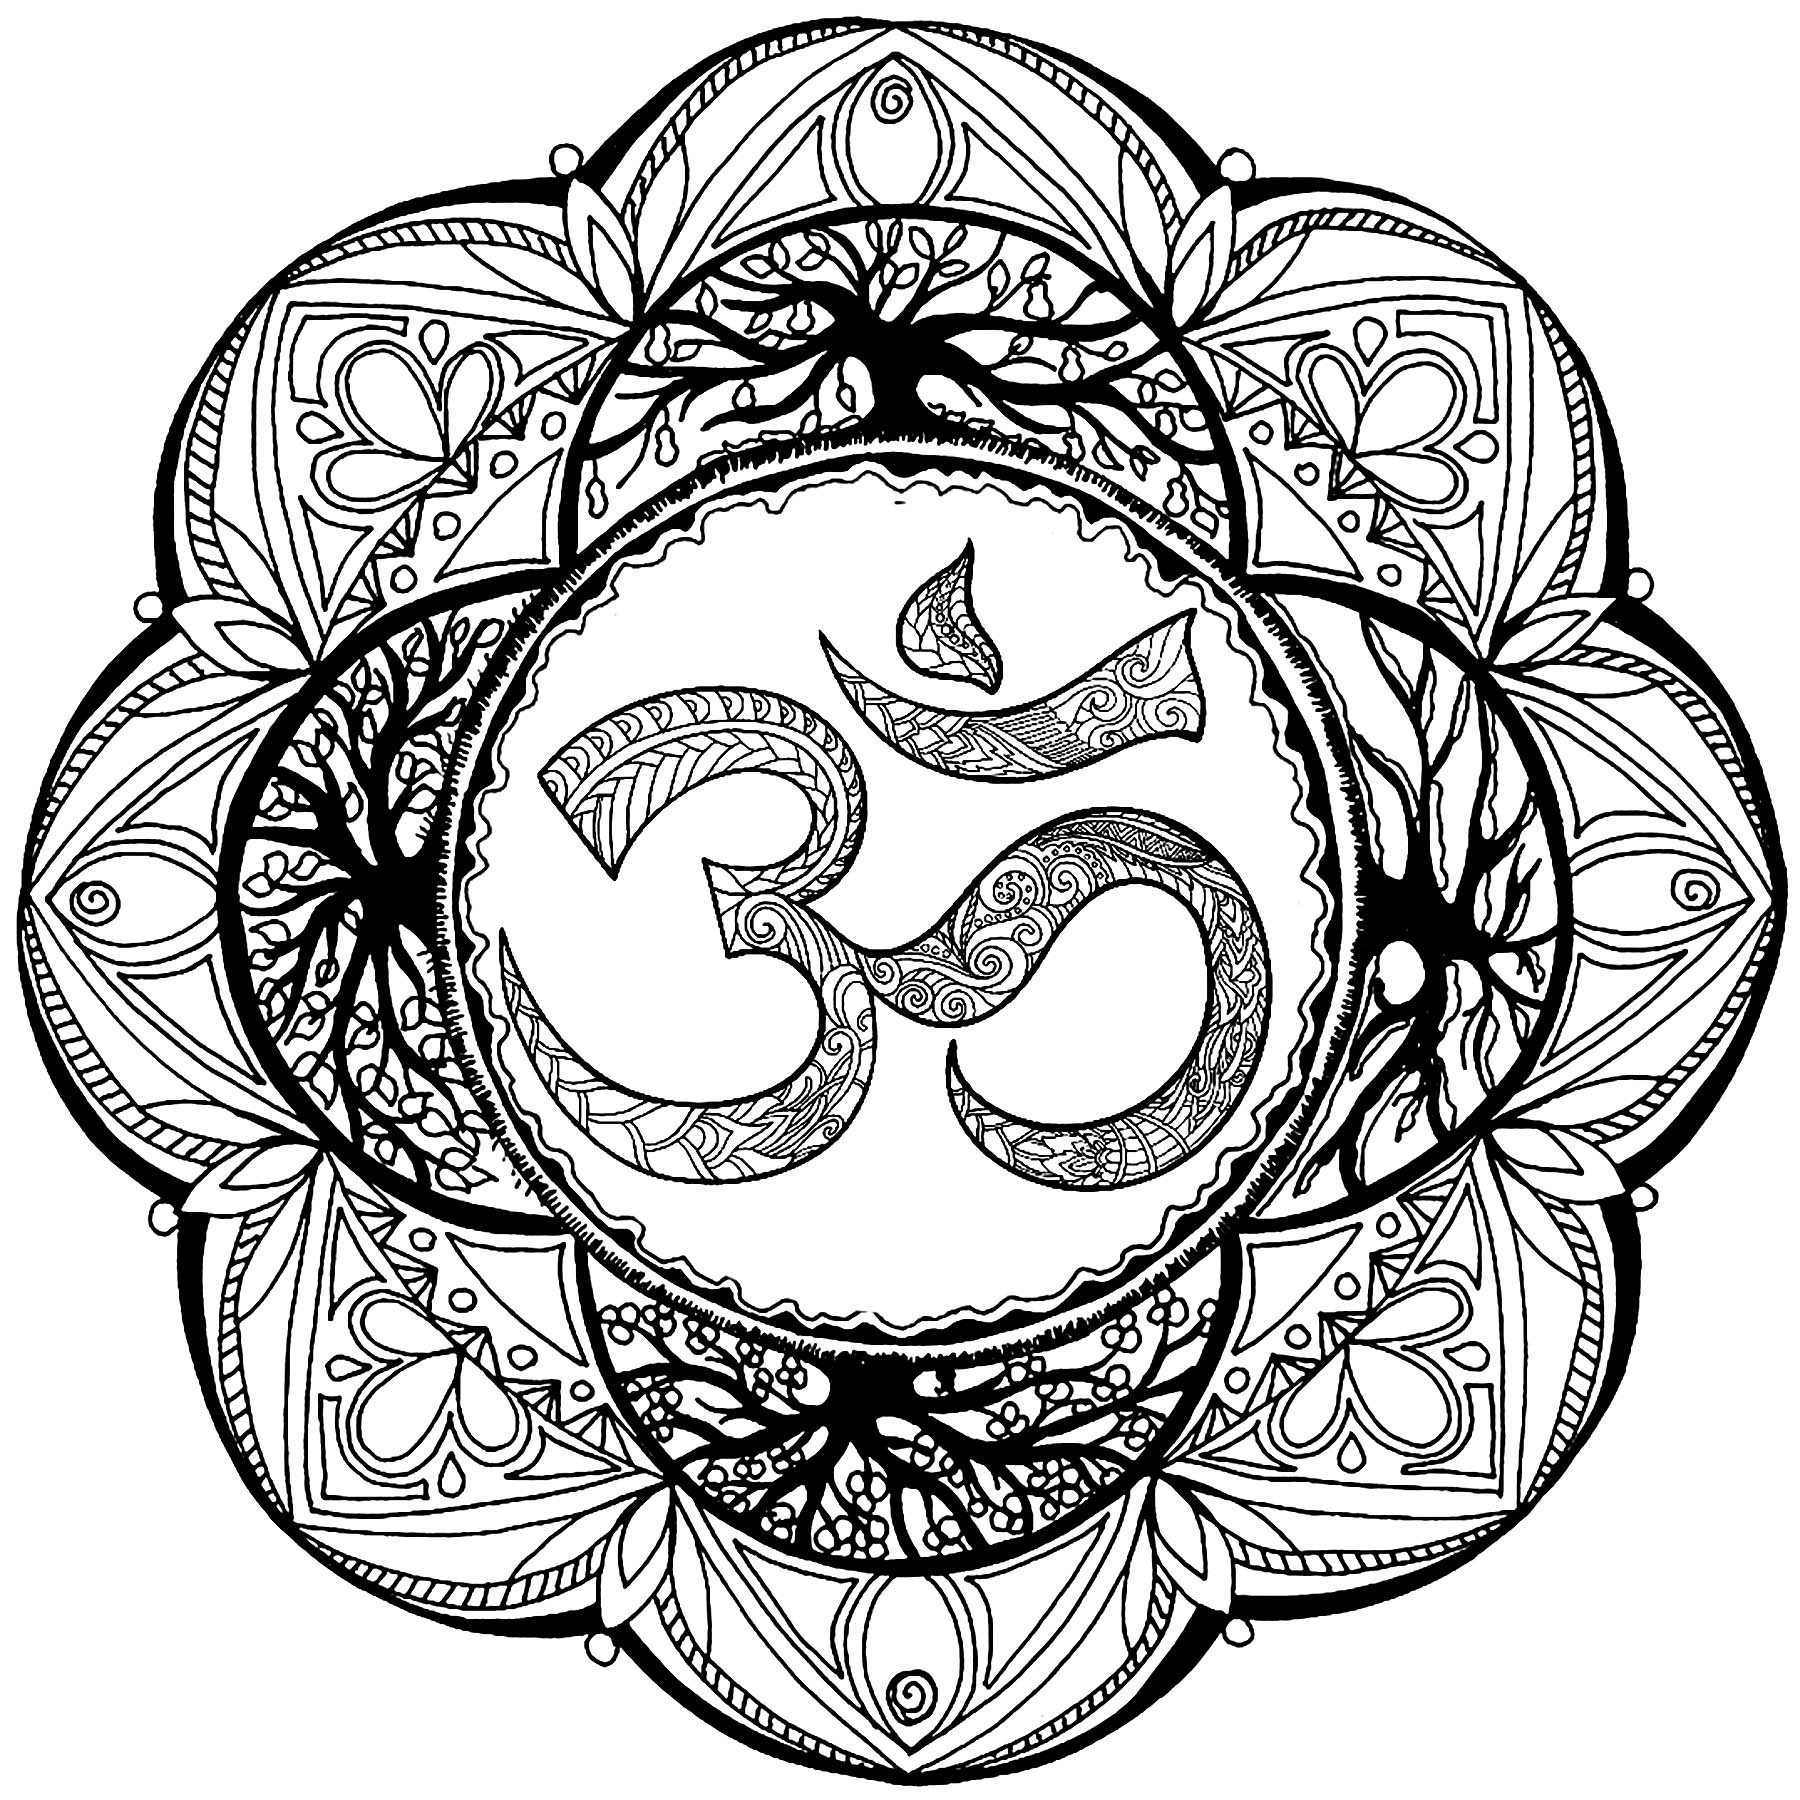 Un grazioso mandala con motivi complessi e il simbolo 'Om'.